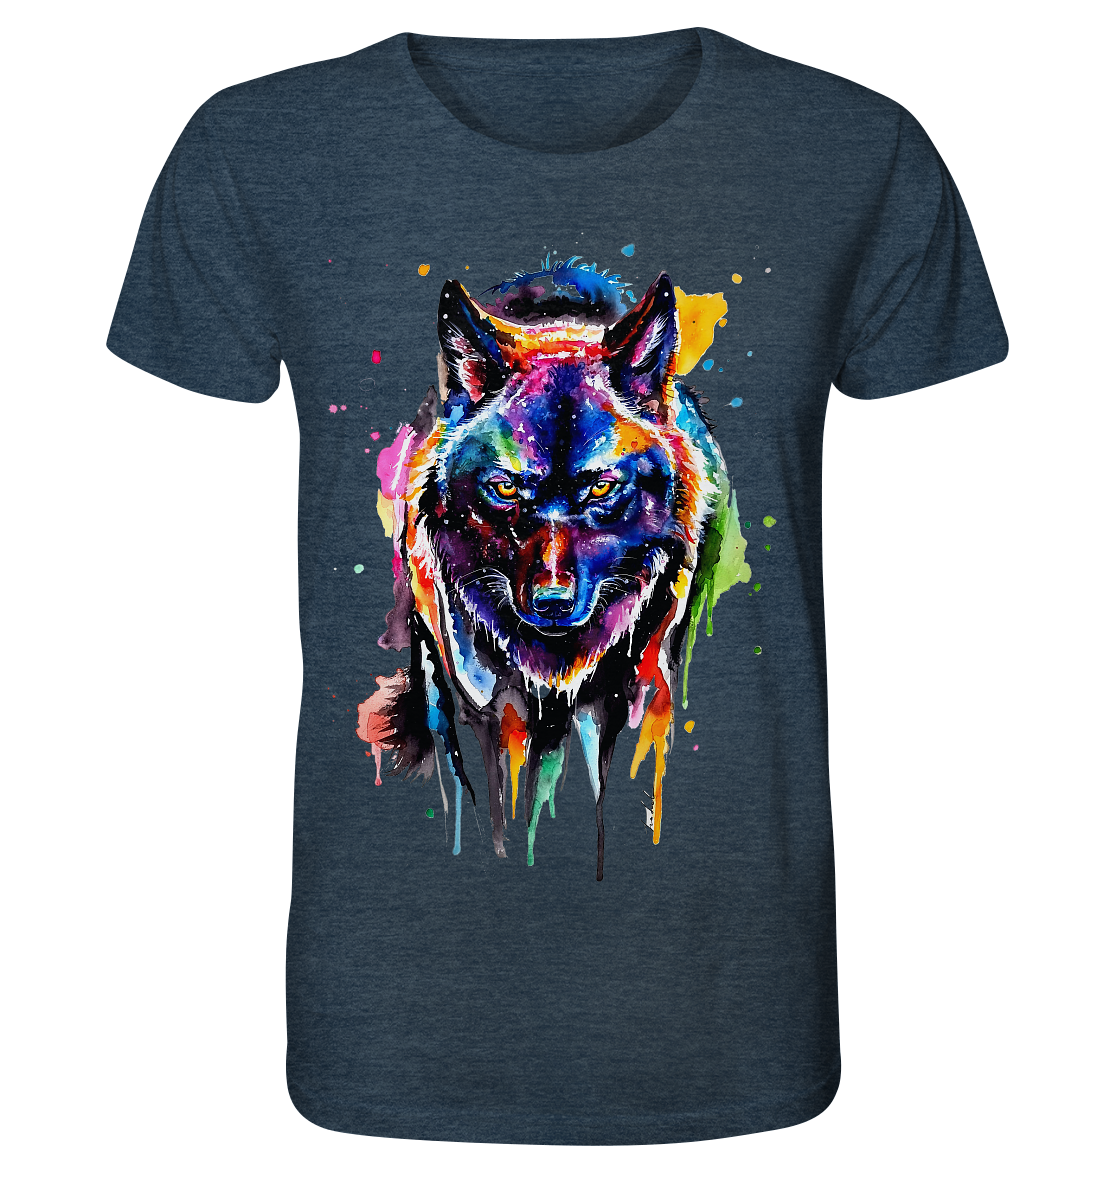 Bunter schwarzer Wolf - Organic Shirt (meliert)